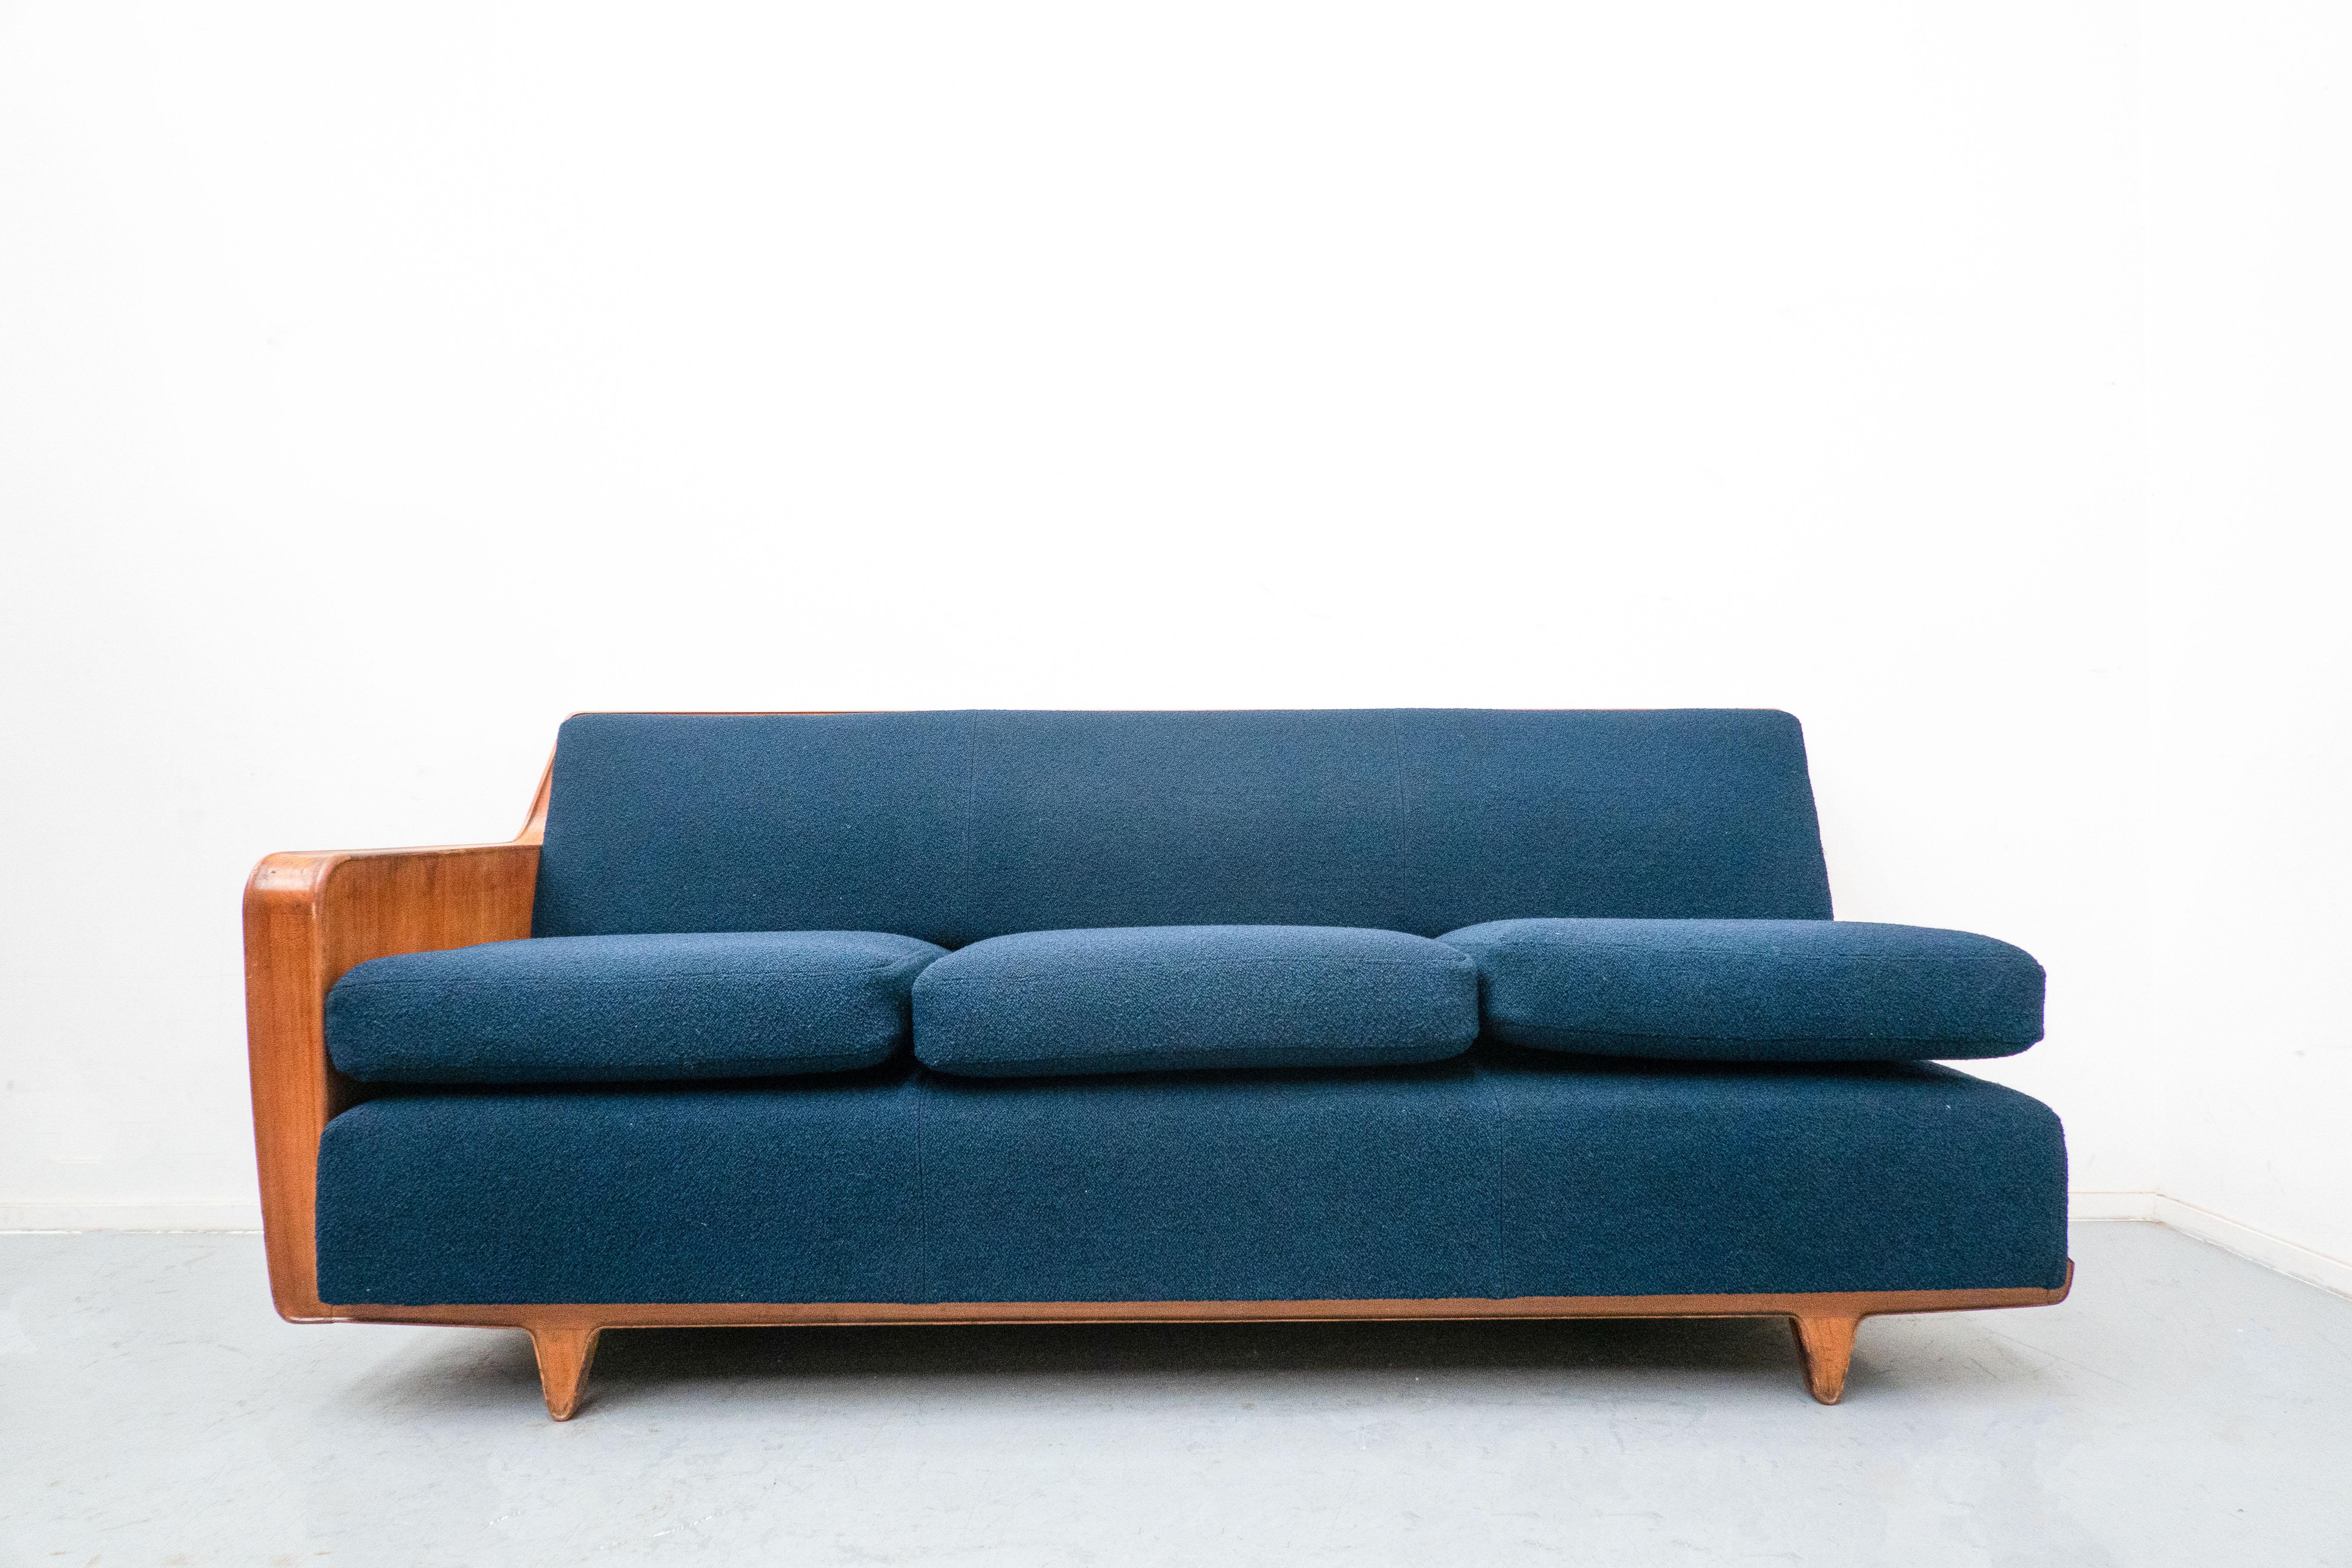 Blaues Sofa der Jahrhundertmitte, Melchiorre Bega zugeschrieben, Kirschholz, Italien, 1950er Jahre
Neu gepolstert mit blauem Stoff.
 